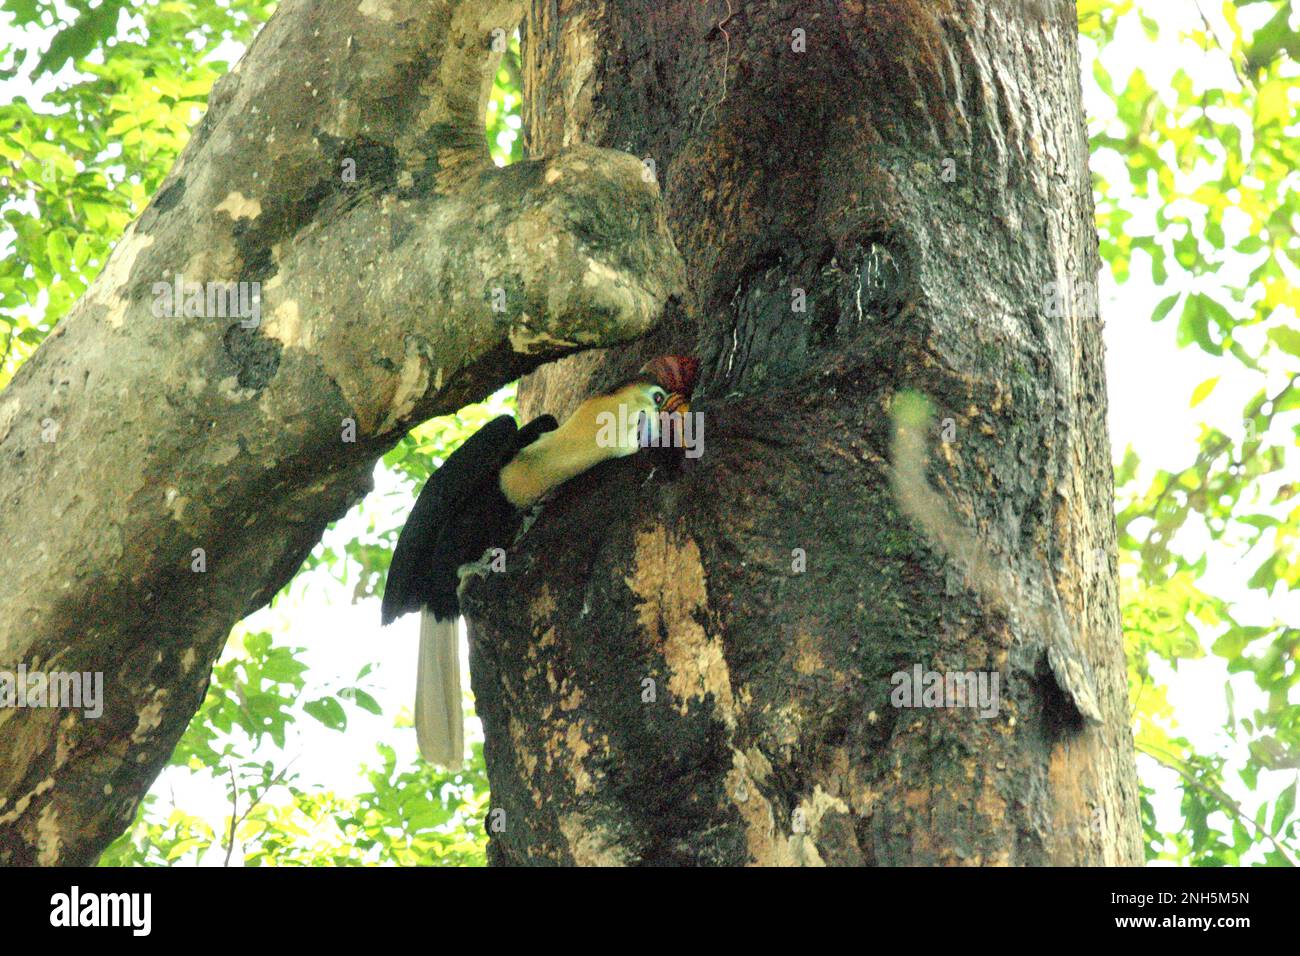 Un maschio knobbed hornbill, o a volte chiamato Sulawesi rugged hornbill (Rhyticeros cassidix), alimenta un pulcino che sta aspettando all'interno di un nido, attraverso una crepa su un albero nella riserva naturale di Tangkoko, Sulawesi settentrionale, Indonesia. La specie è attualmente considerata vulnerabile all'estinzione a causa del disboscamento e della caccia, secondo Amanda Hackett della Wildlife Conservation Society in una pubblicazione del 2022. "Con gli alberi che diminuiscono, non ci sono luoghi sicuri per coppie di oroscafi per costruire i loro nidi in grandi alberi maturi", ha aggiunto. Foto Stock